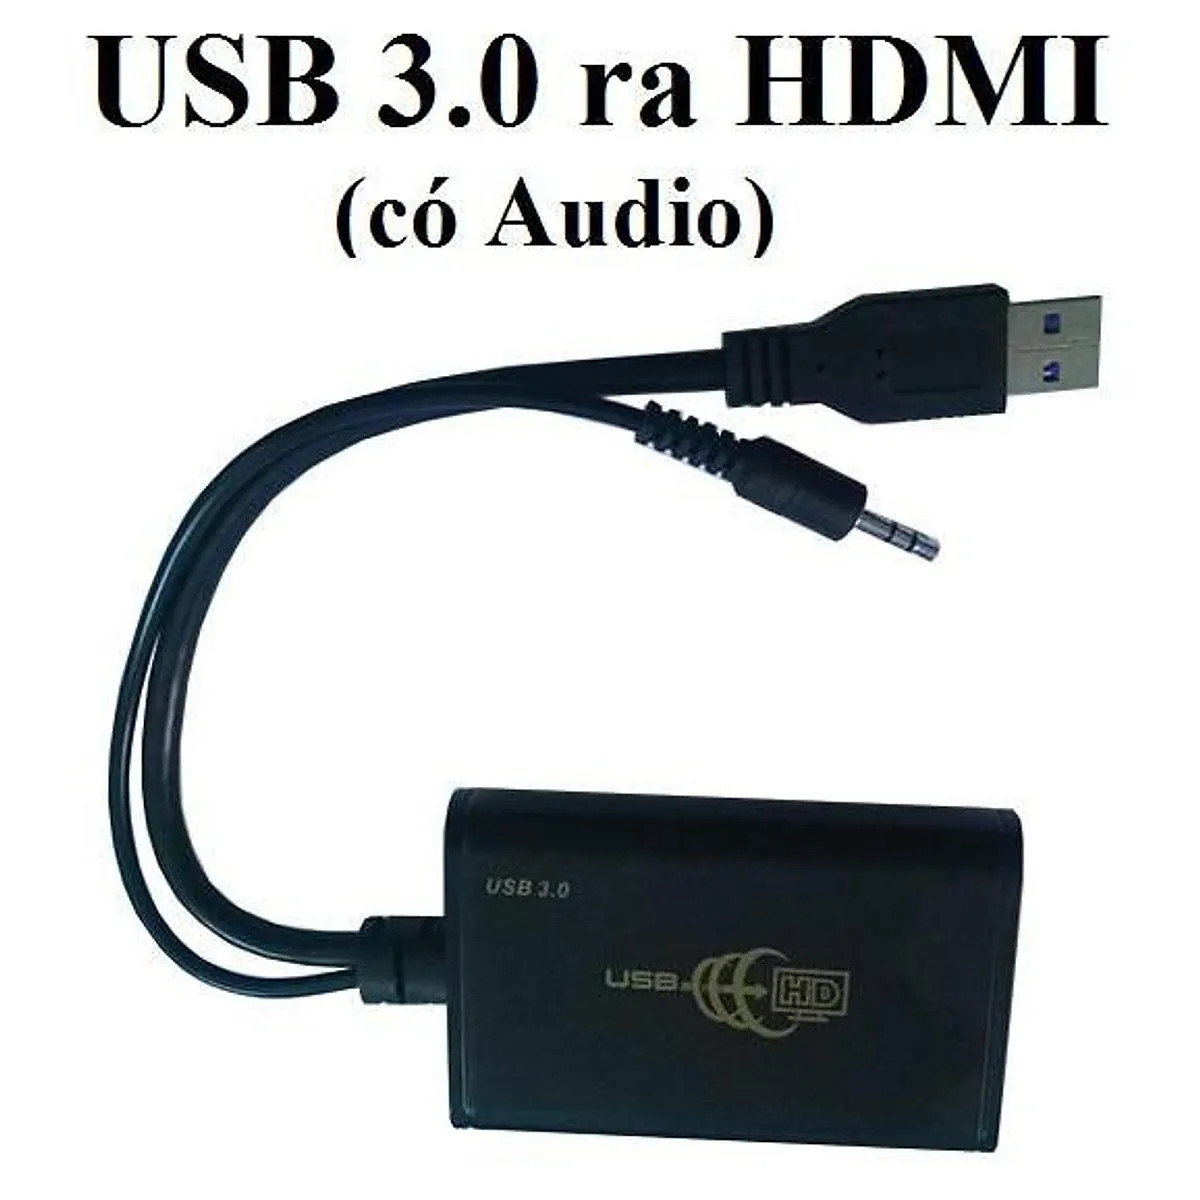 CÁP CHUYỂN USB 3.0 RA HDMI CÓ AUDIO (VSP)